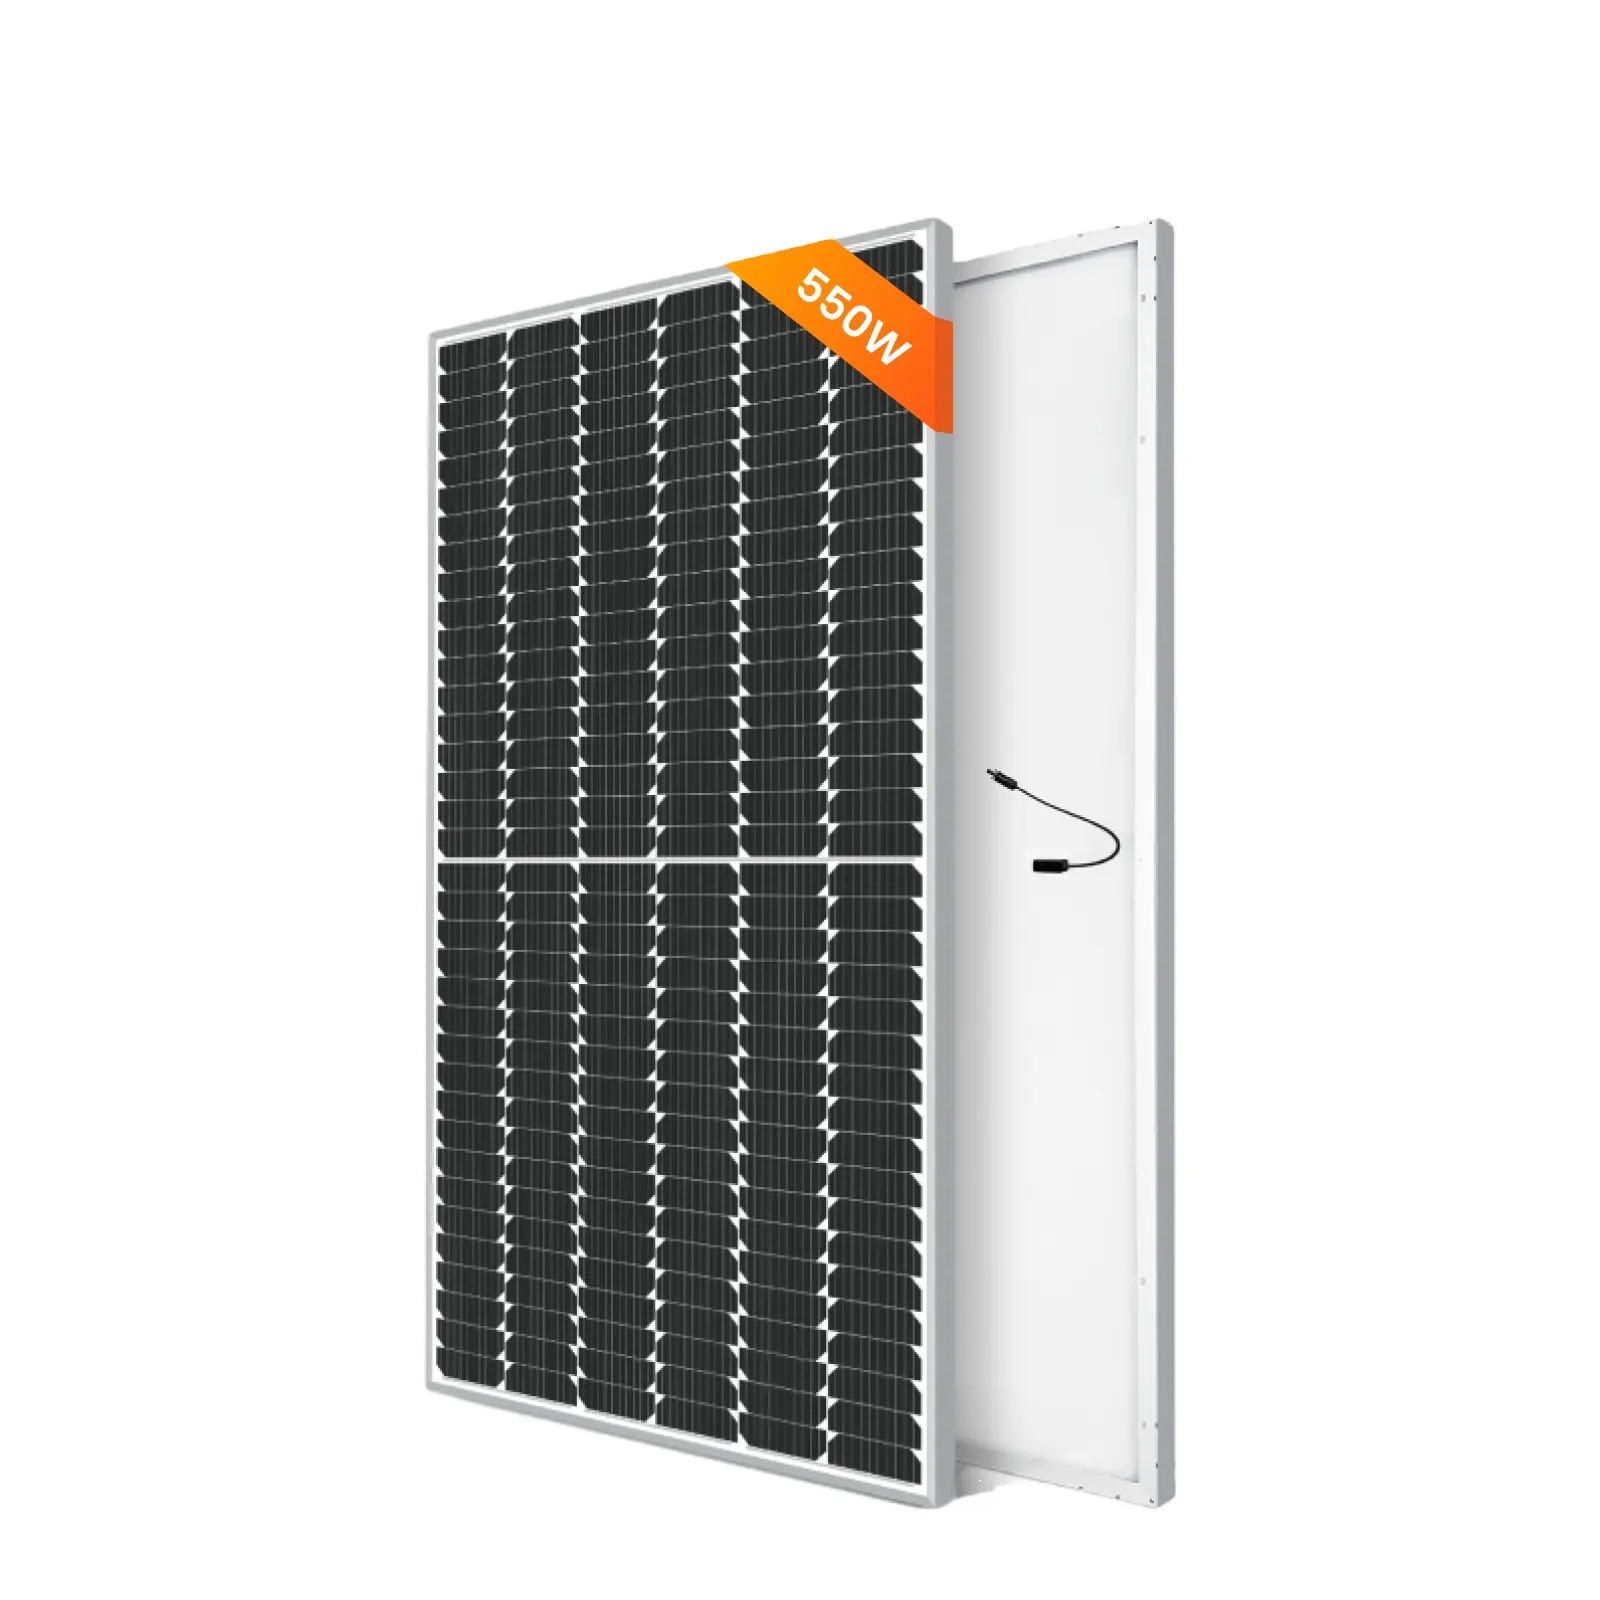 Hochspannungs-Solarsystem für heimgebrauch 550 W monokristallines Solarpanel mit hoher Effizienz